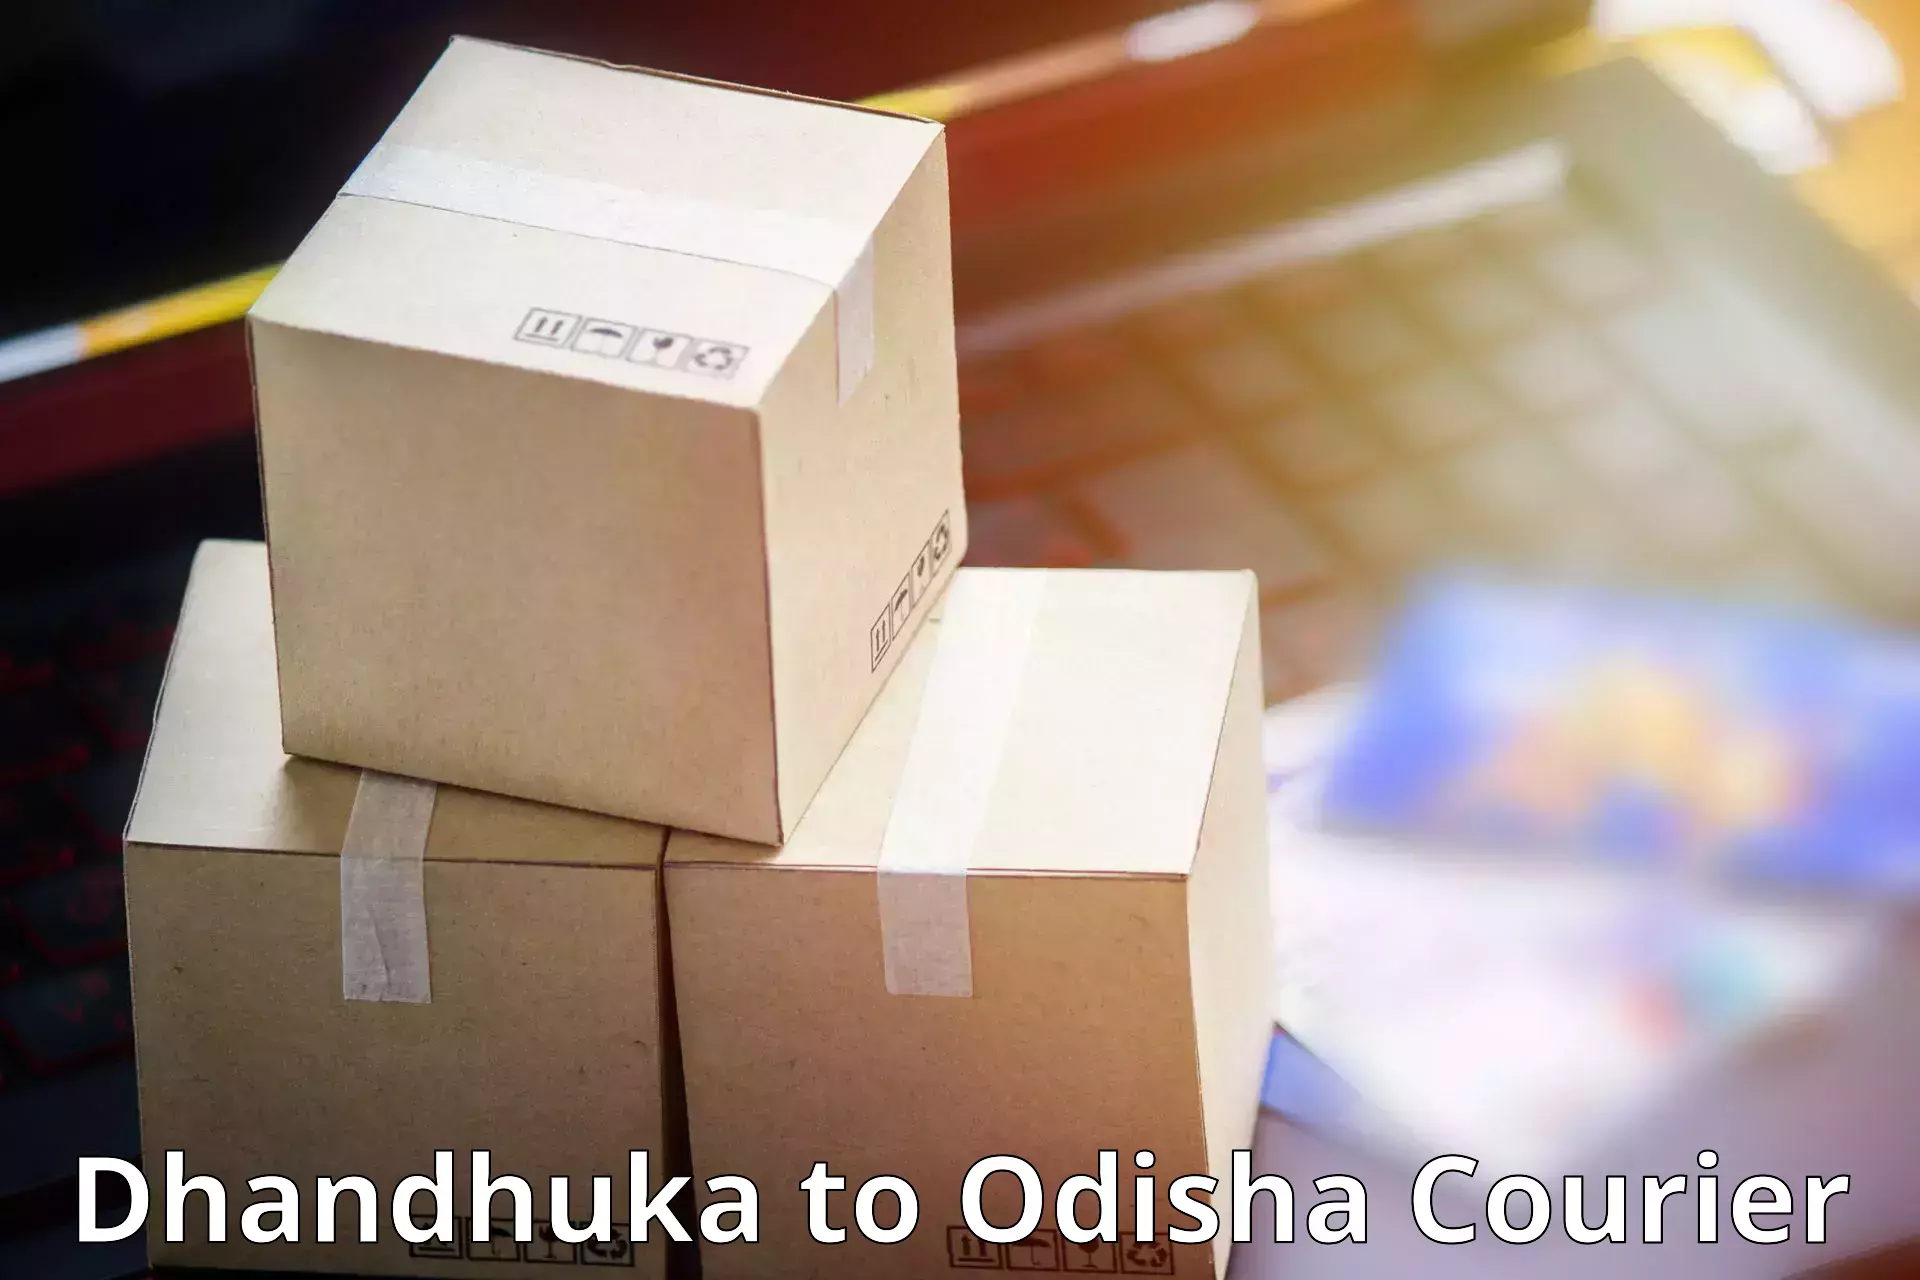 Advanced shipping technology Dhandhuka to Morada